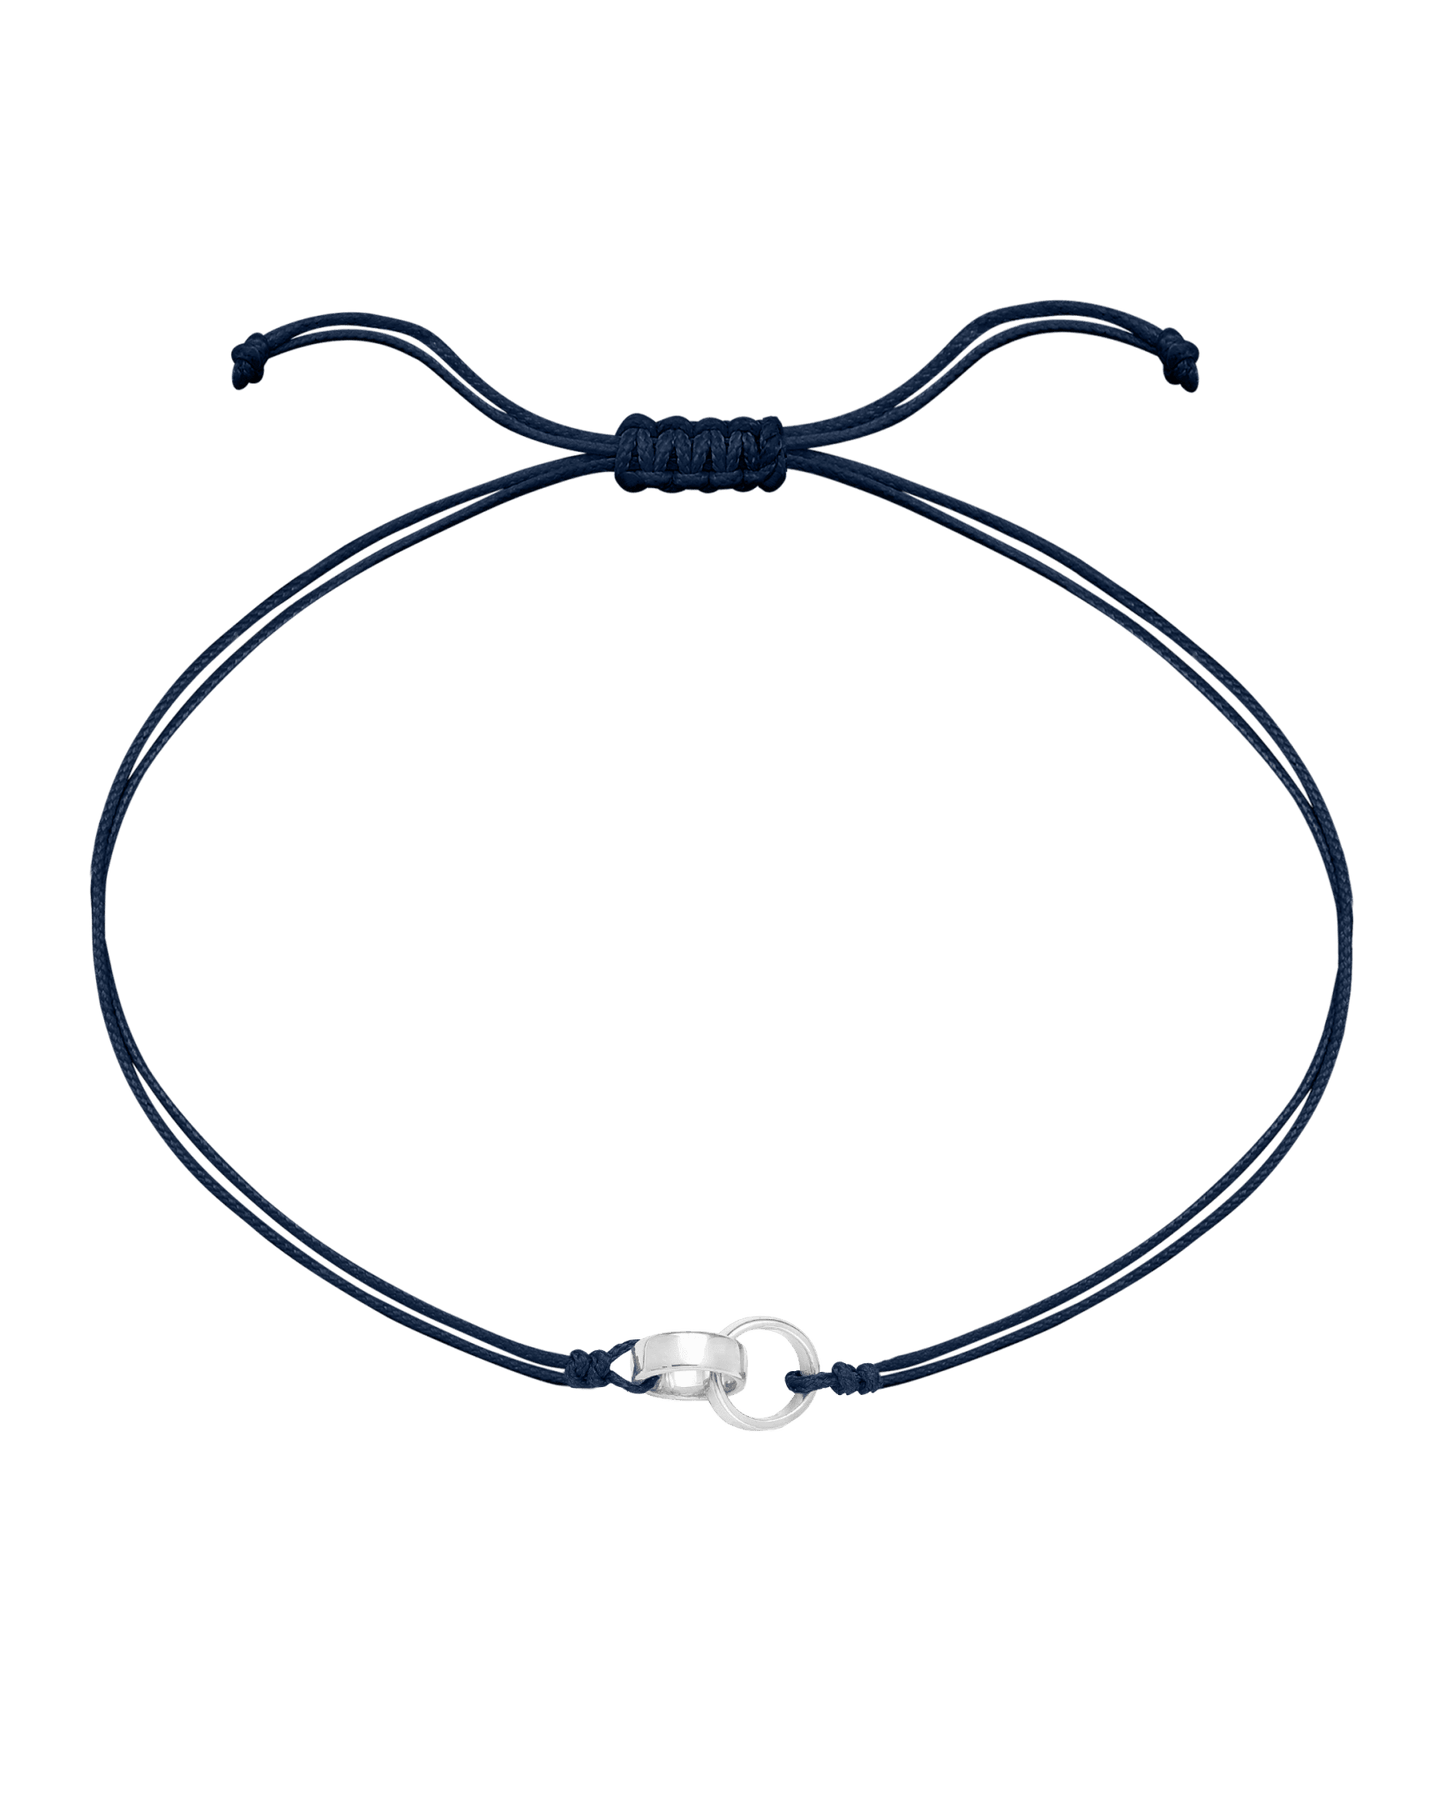 Engravable Links of Love - 925 Sterling Silver Bracelets magal-dev 2 Navy Blue 